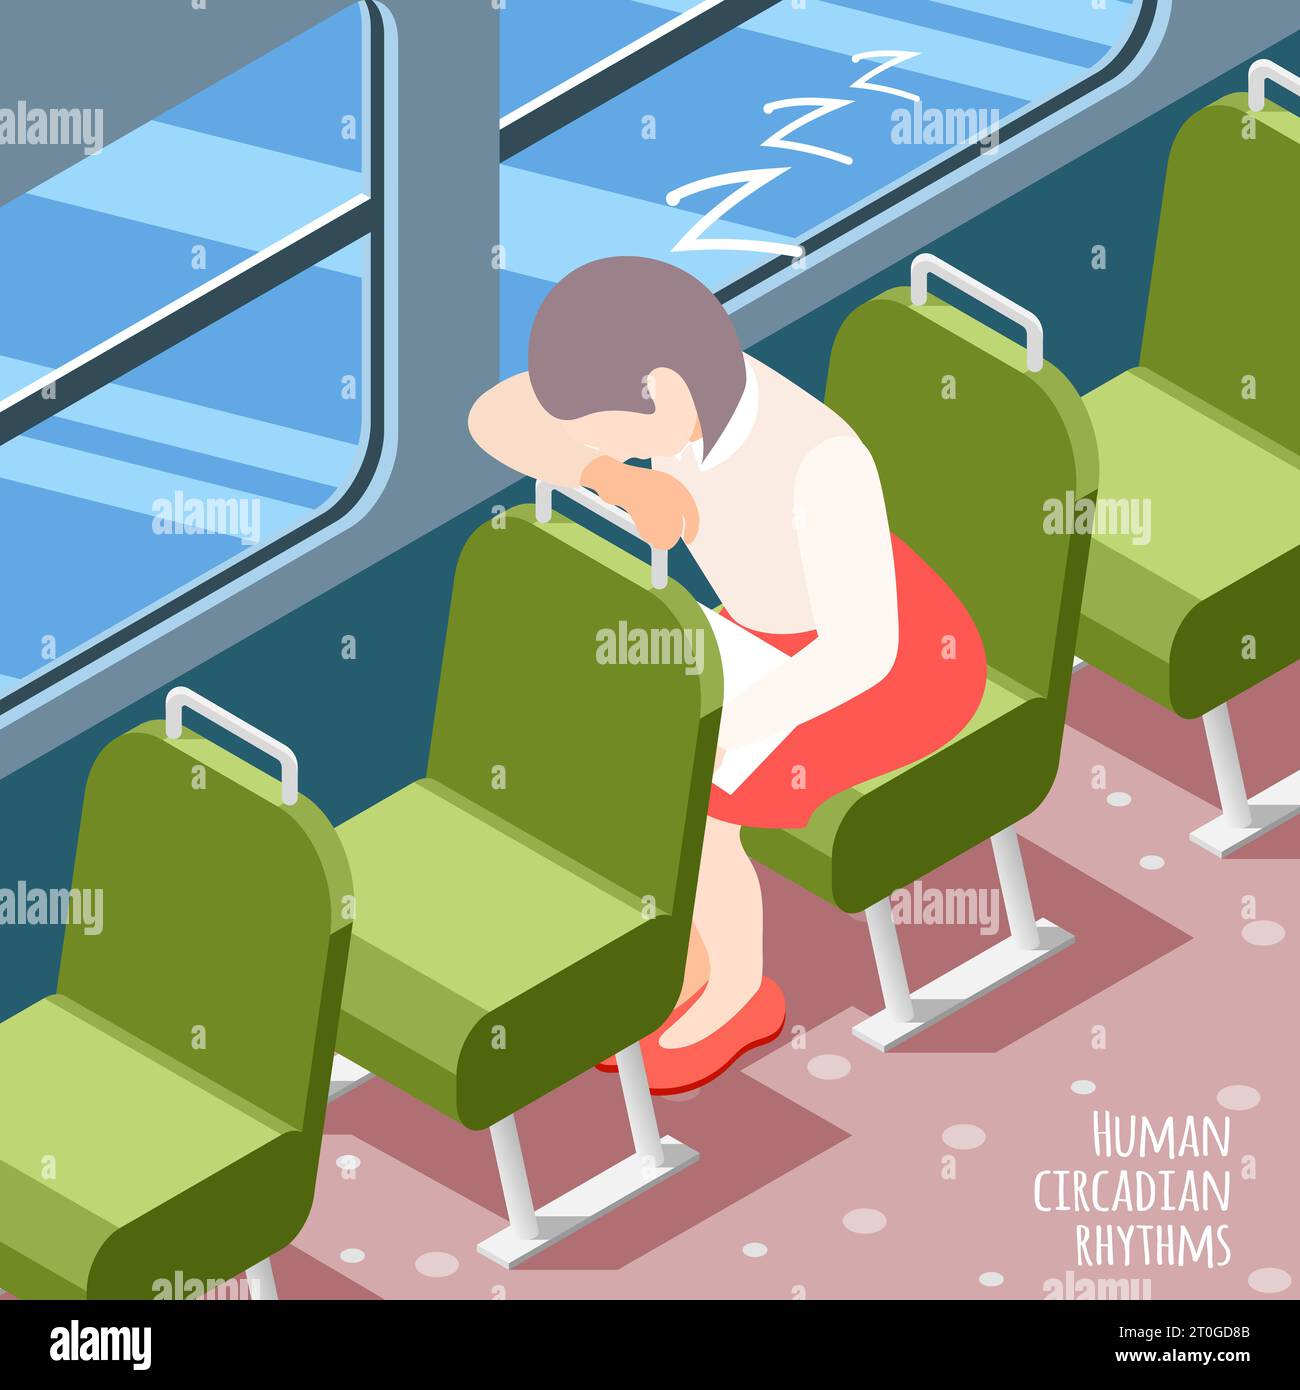 Menschliche zirkadiane Rhythmen isometrisch farbigen Hintergrund mit Frau schlafen im öffentlichen Verkehr Vektor-Illustration Stock Vektor